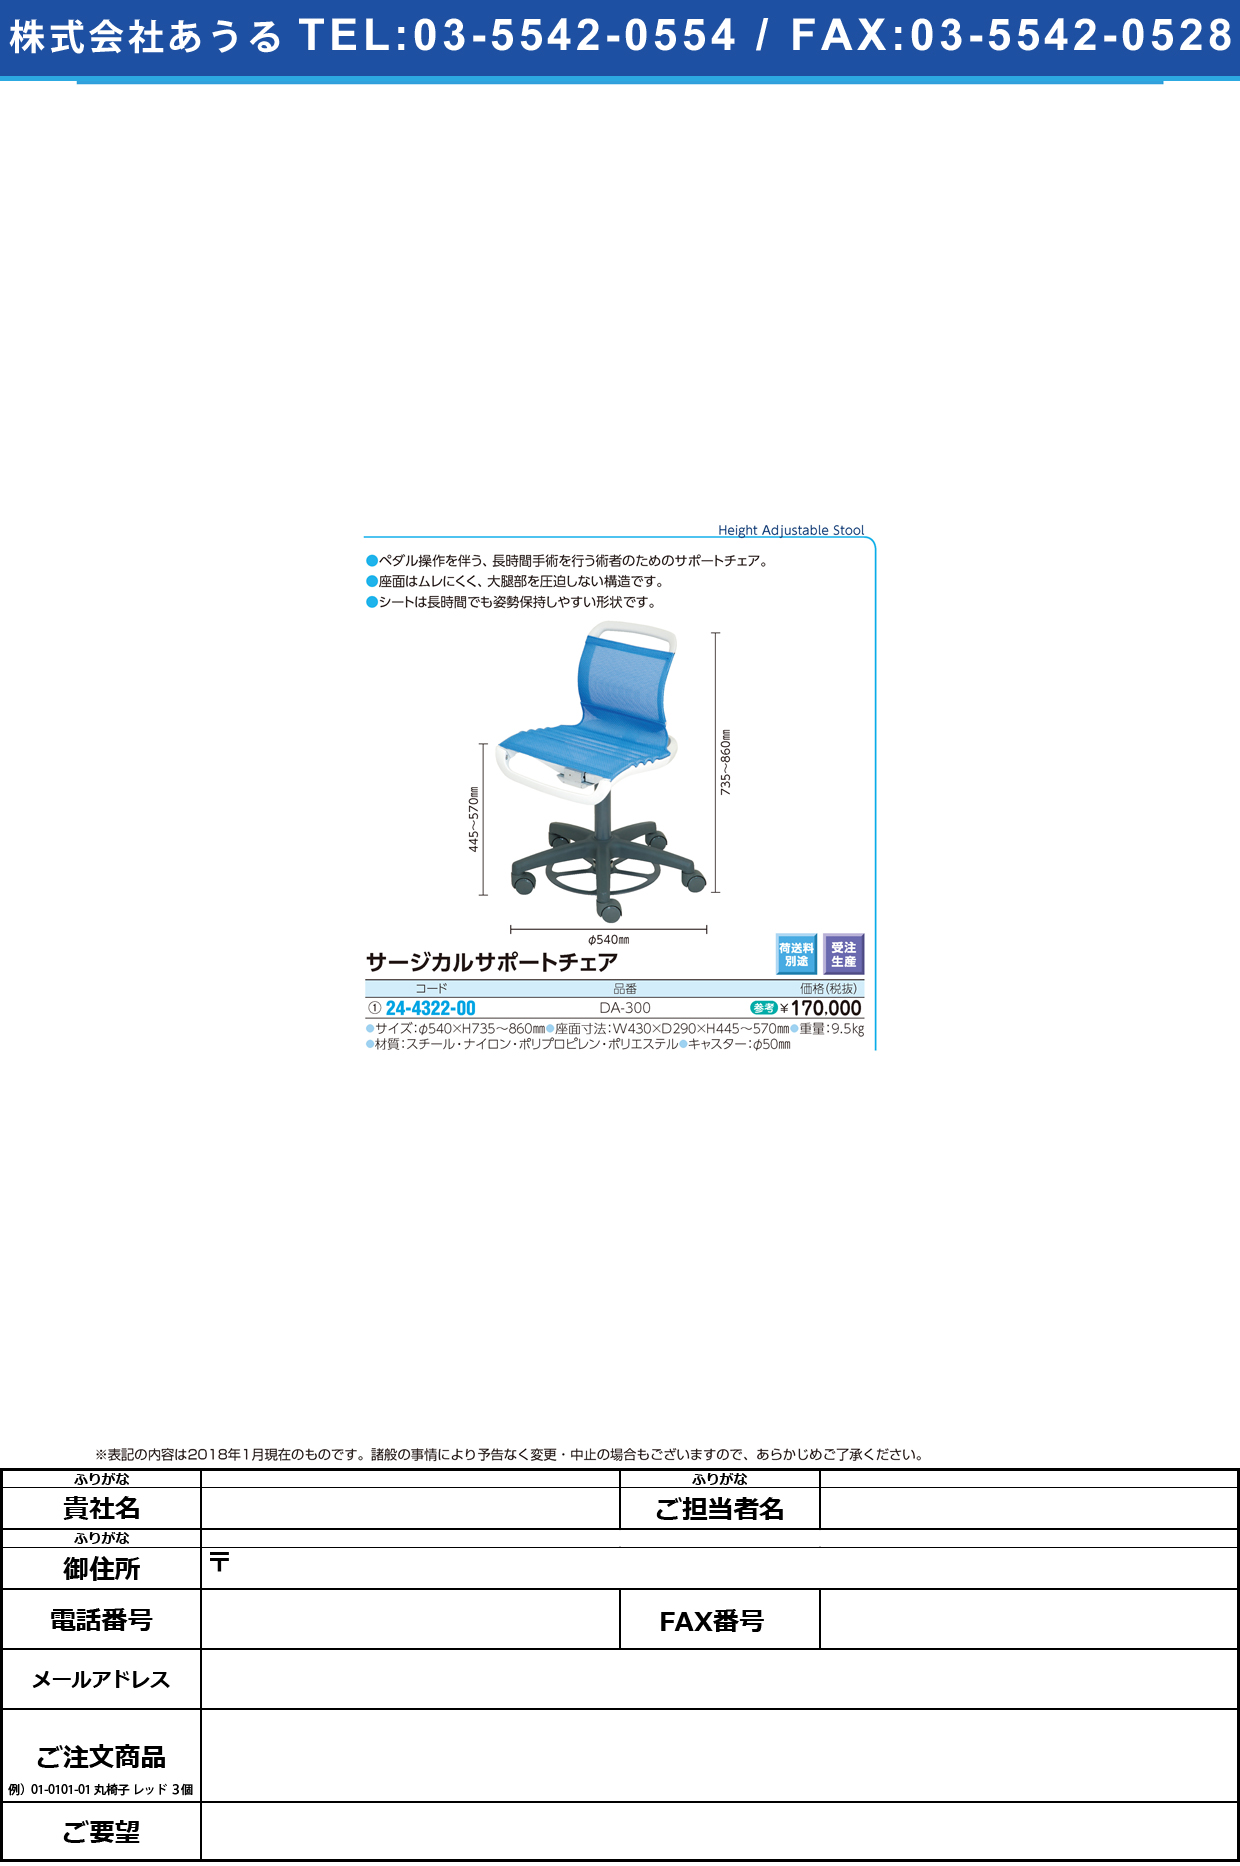 (24-4322-00)サージカルサポートチェア DA-300 ｻｰｼﾞｶﾙｻﾎﾟｰﾄﾁｪｱ(タカノ)【1台単位】【2018年カタログ商品】